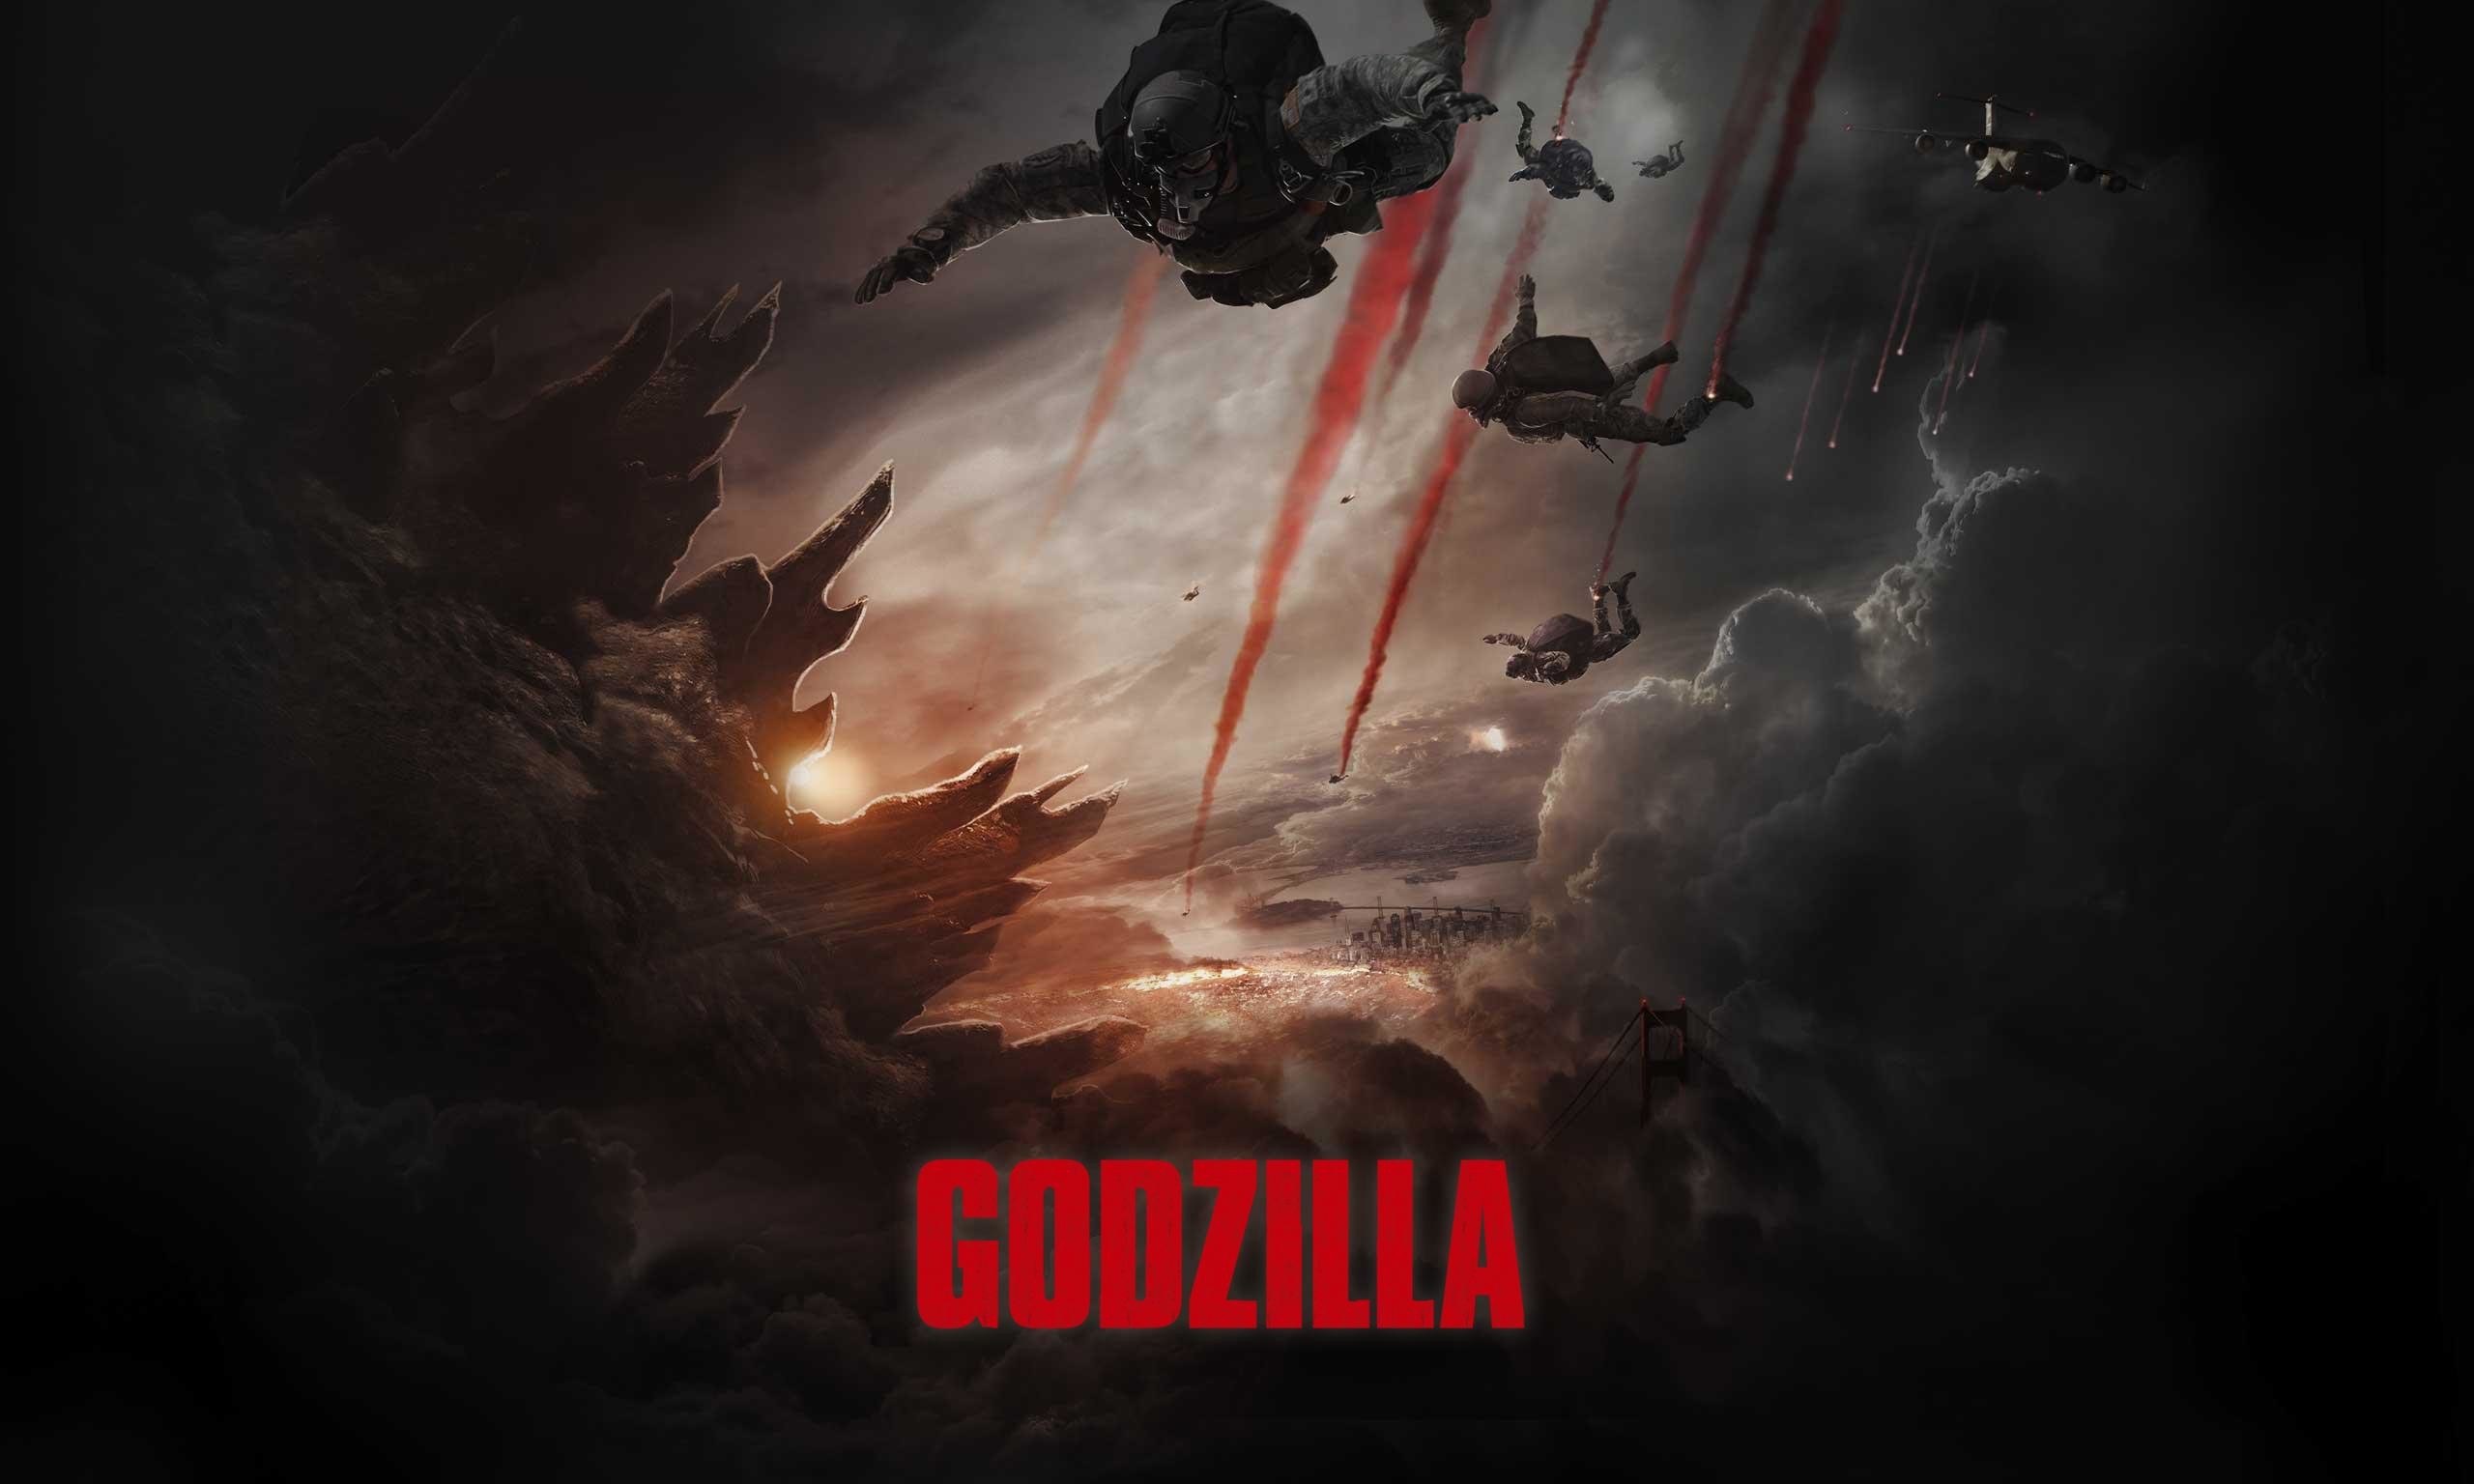 2560x1536 Godzilla 2014 Movie Wallpaper HD | Godzilla 2014 Movie